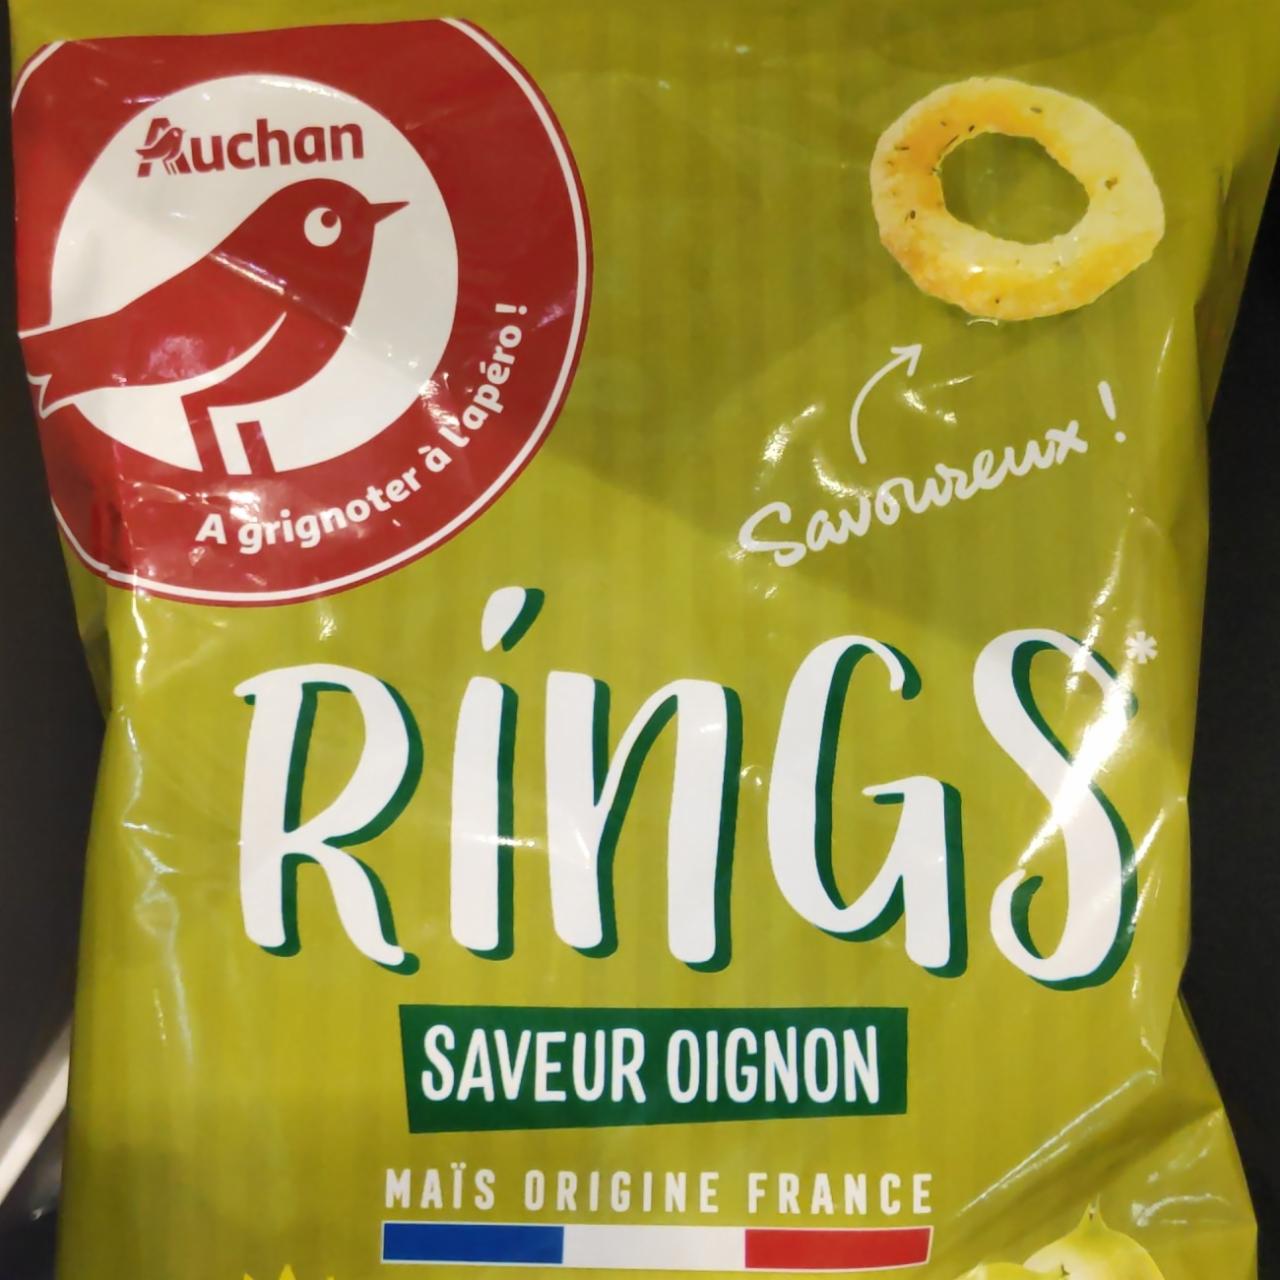 Zdjęcia - Rings Saveur Oignon Auchan